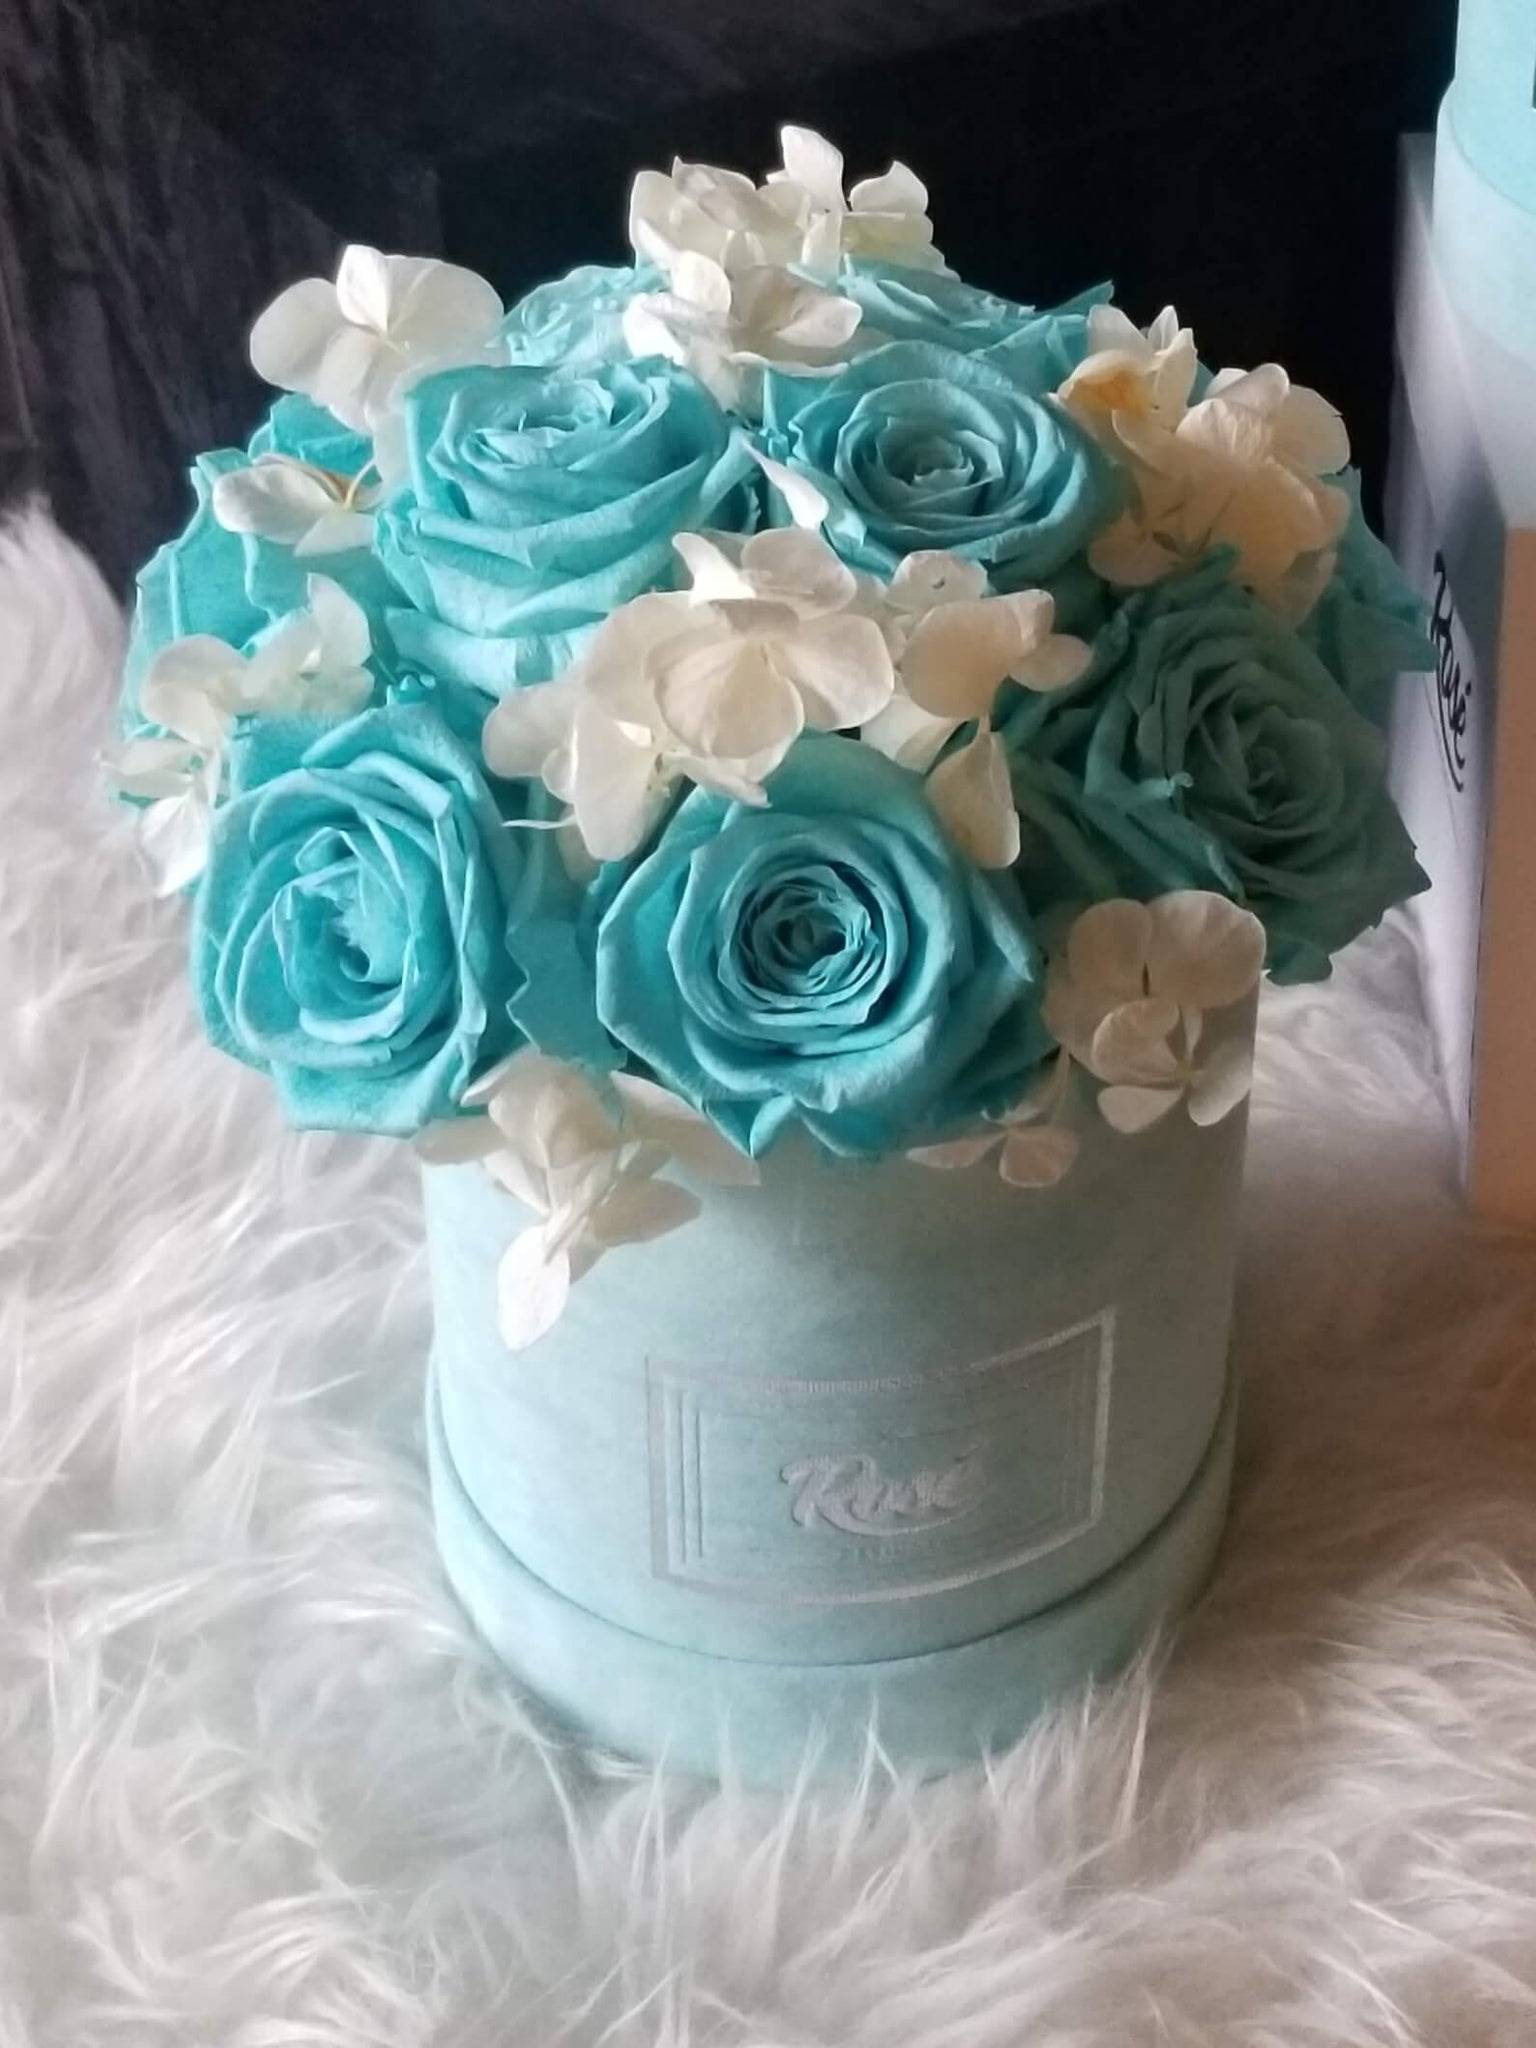 Rosé Designs Blue flower bouquet in Blue Velvet Box